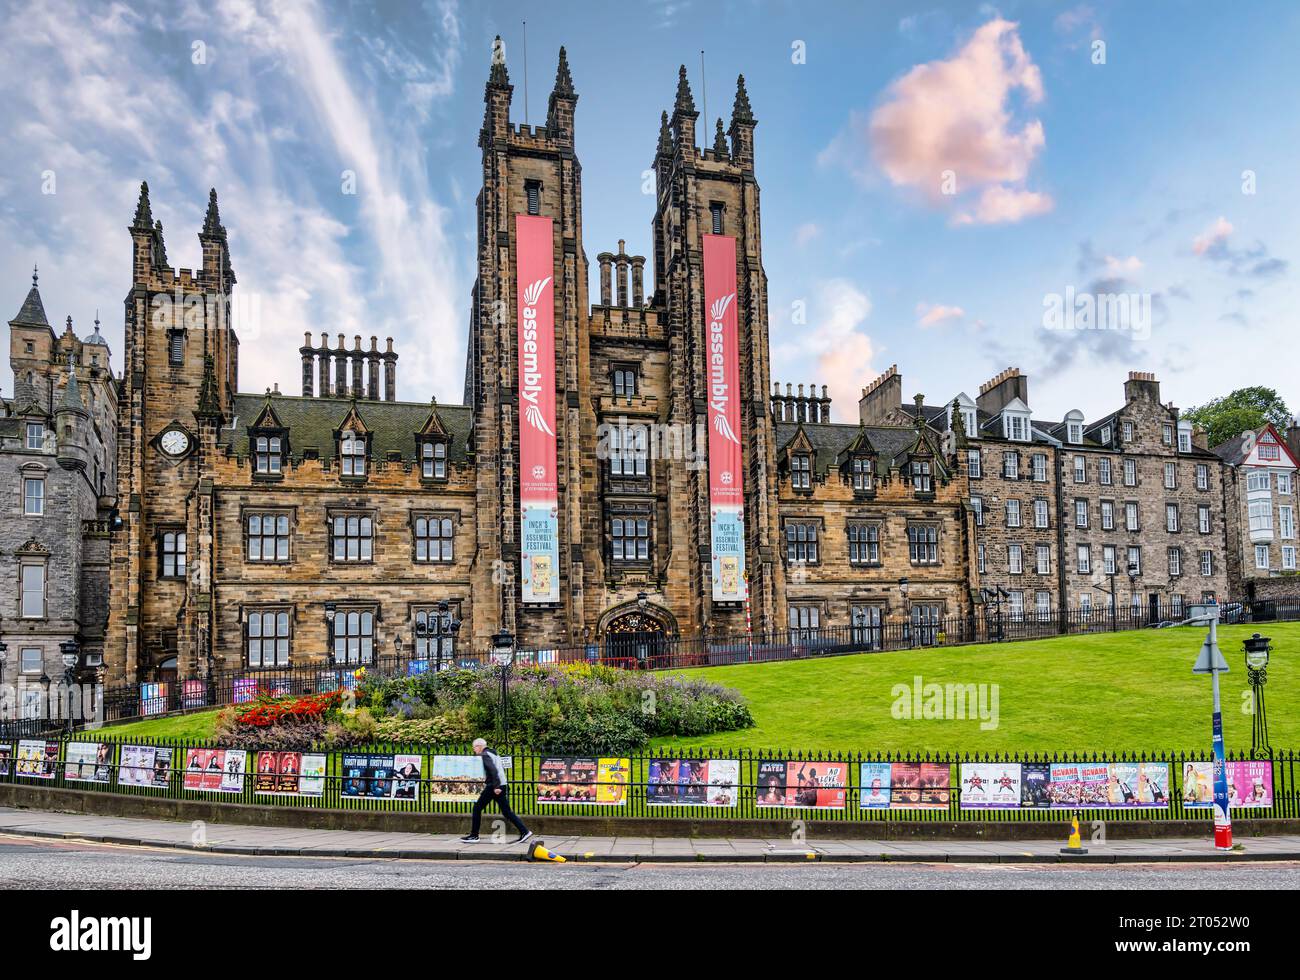 Assembly on The Mound during Edinburgh Festival Fringe with fringe show posters on railing, scotland, UK Stock Photo